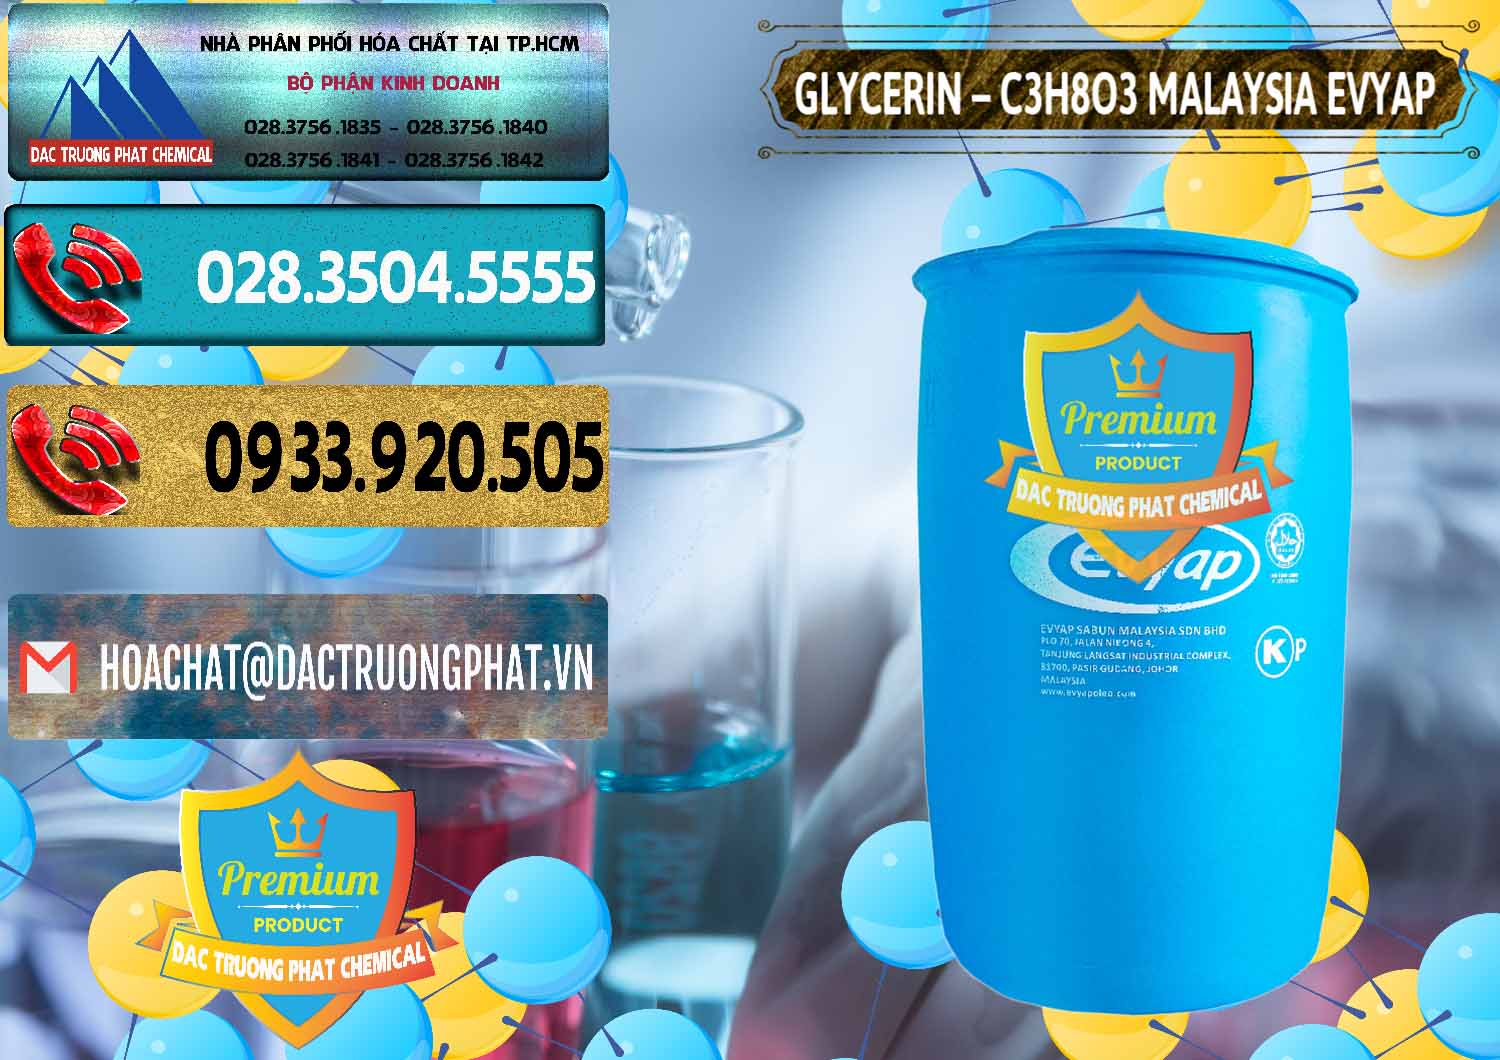 Phân phối và bán Glycerin – C3H8O3 Malaysia Evyap - 0066 - Nơi chuyên cung cấp ( nhập khẩu ) hóa chất tại TP.HCM - hoachatdetnhuom.com